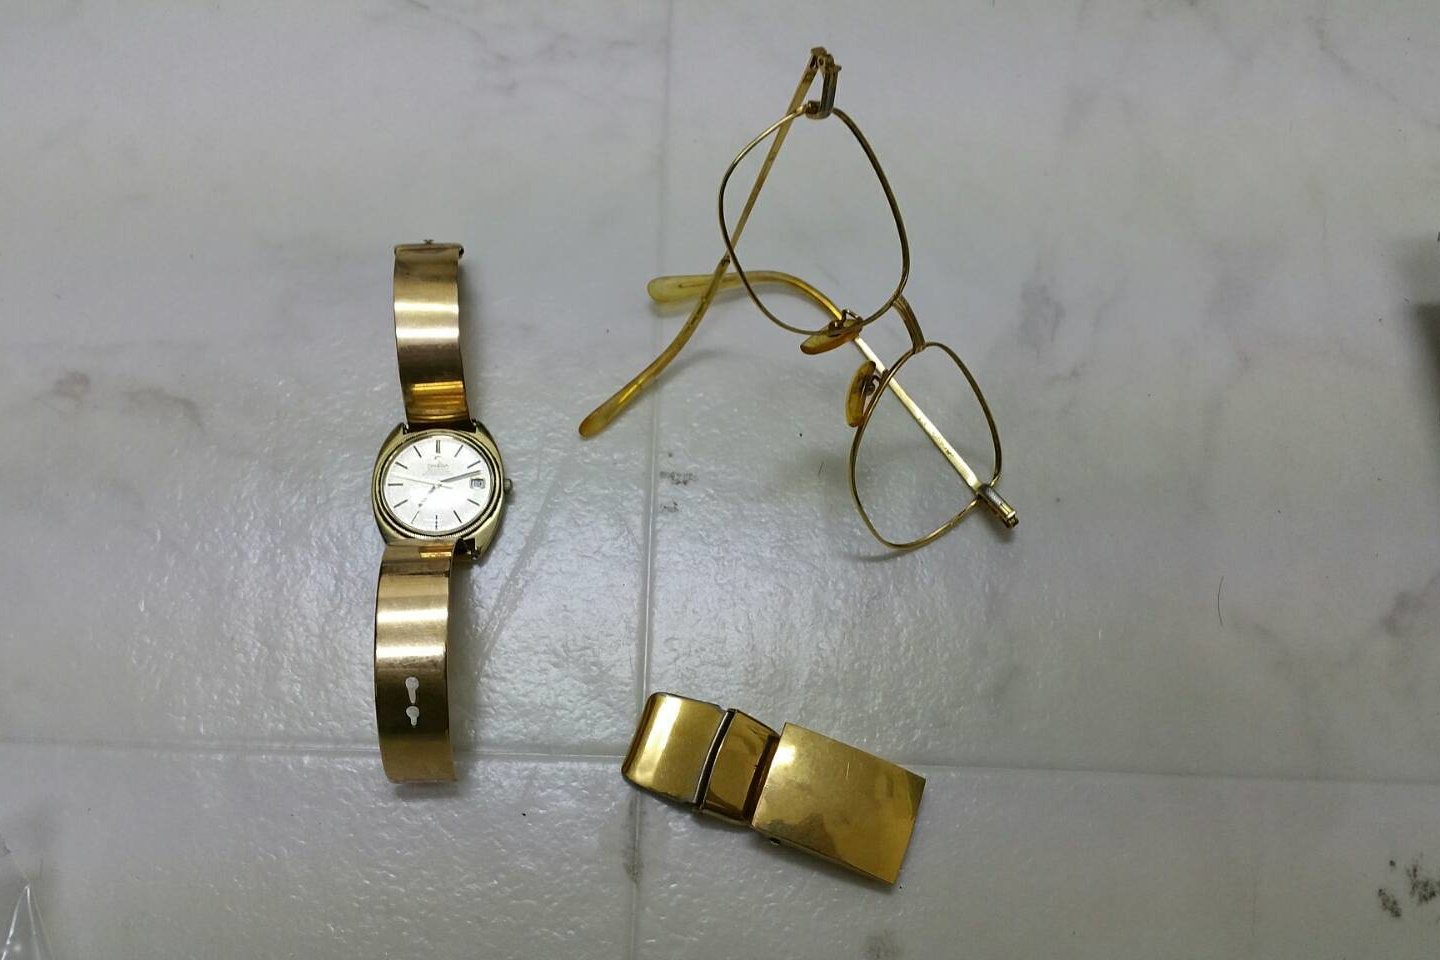 金時計の買取事例 | 名古屋市で貴金属 ブランド品の買取ならおたからや鳴海駅前店